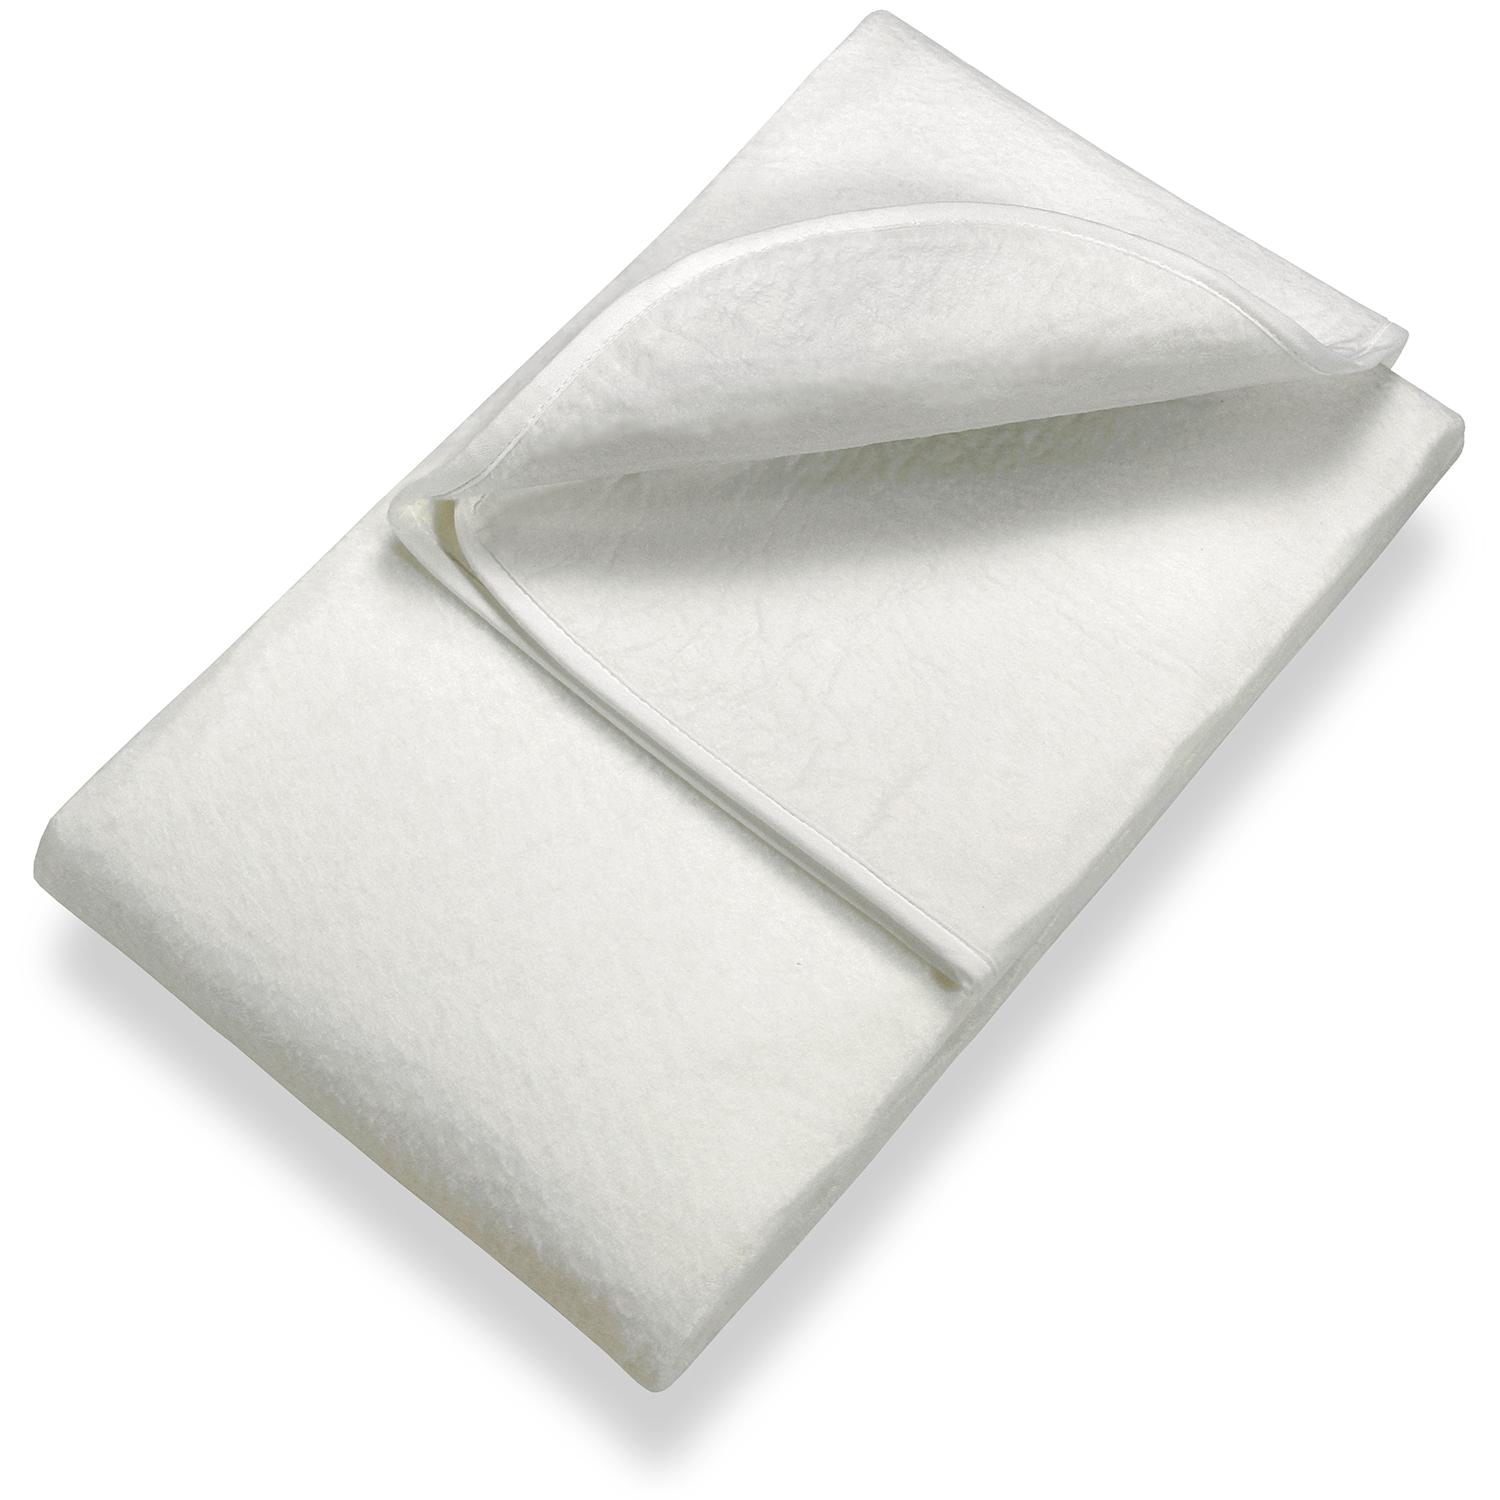 Sleezzz Basic somier de fieltro de aguja 160 x 200 cm, protector de colchón para colocar sobre el somier, blanco